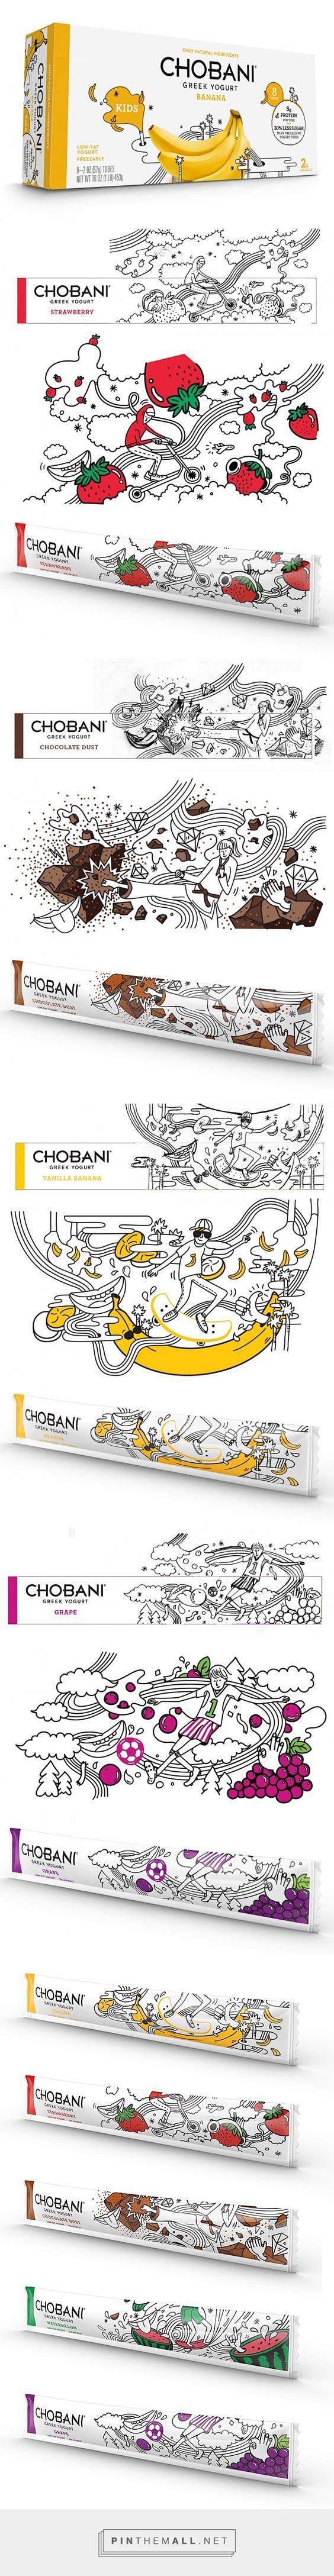 Chobani Yogurt Kids ...